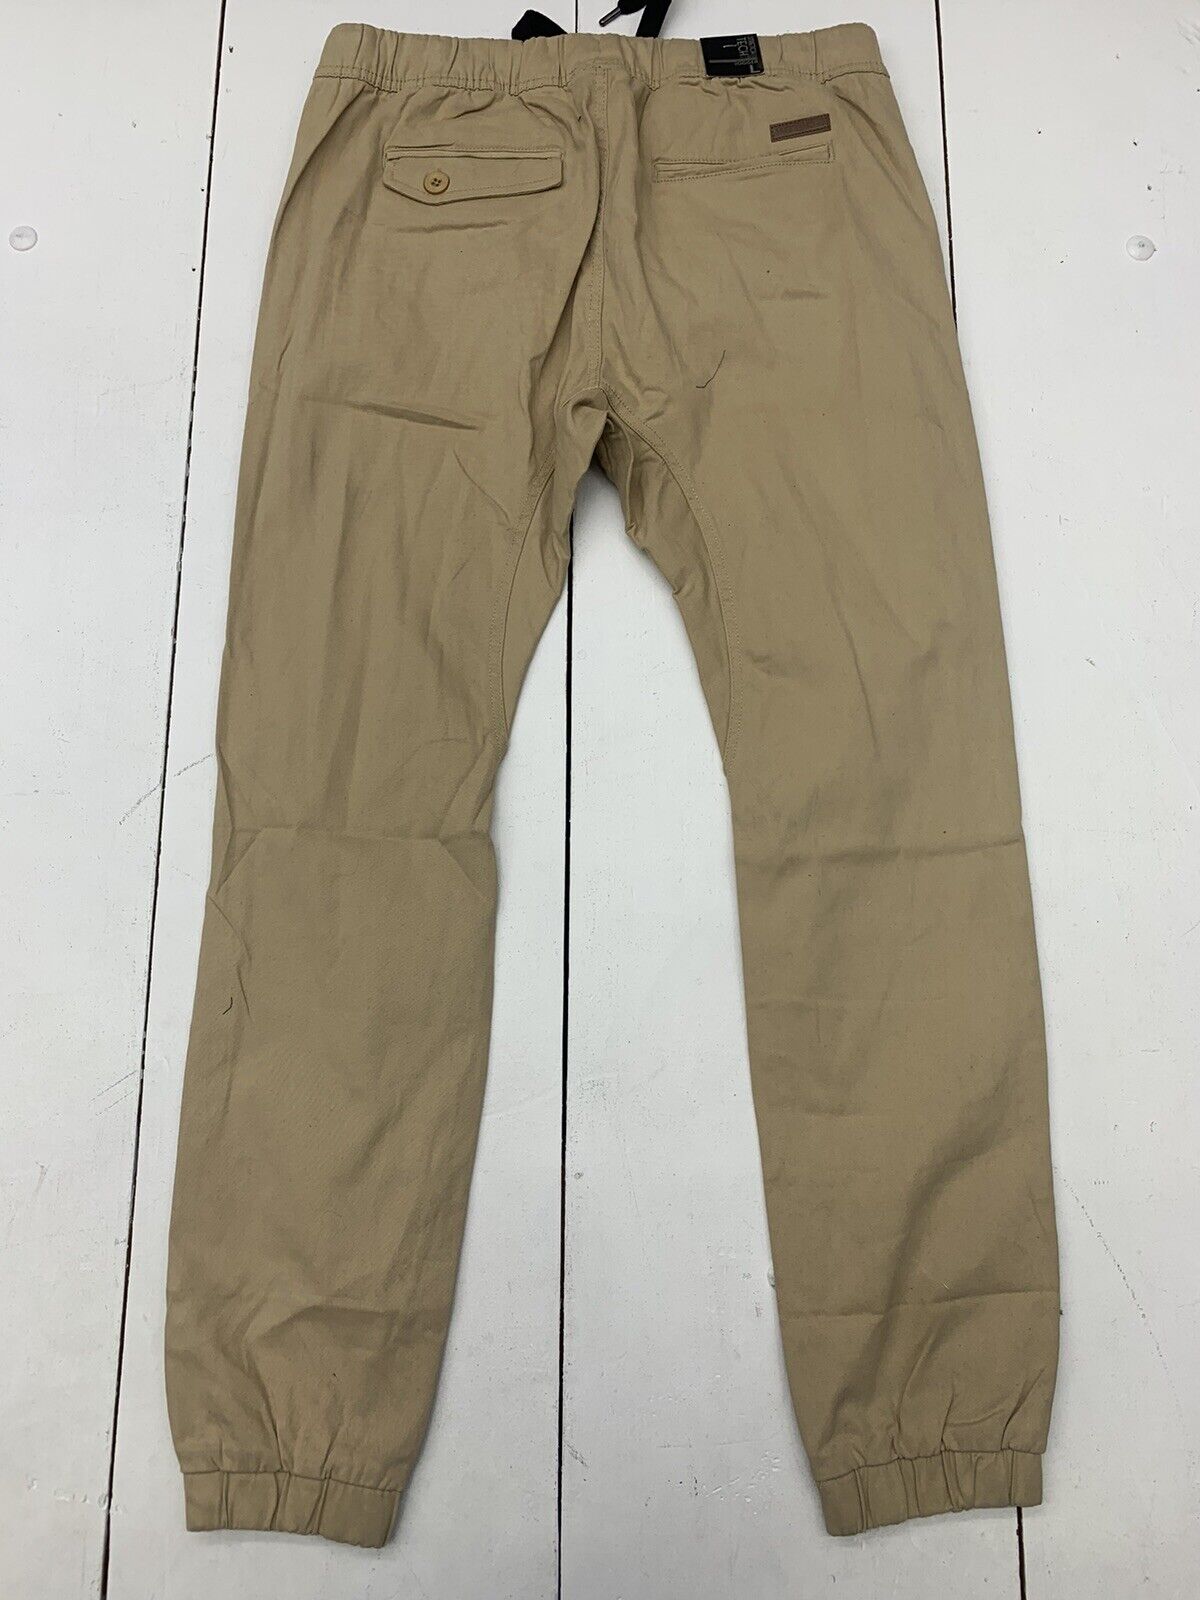 WT02 Men’s Cargo Khaki Pants / Size Medium